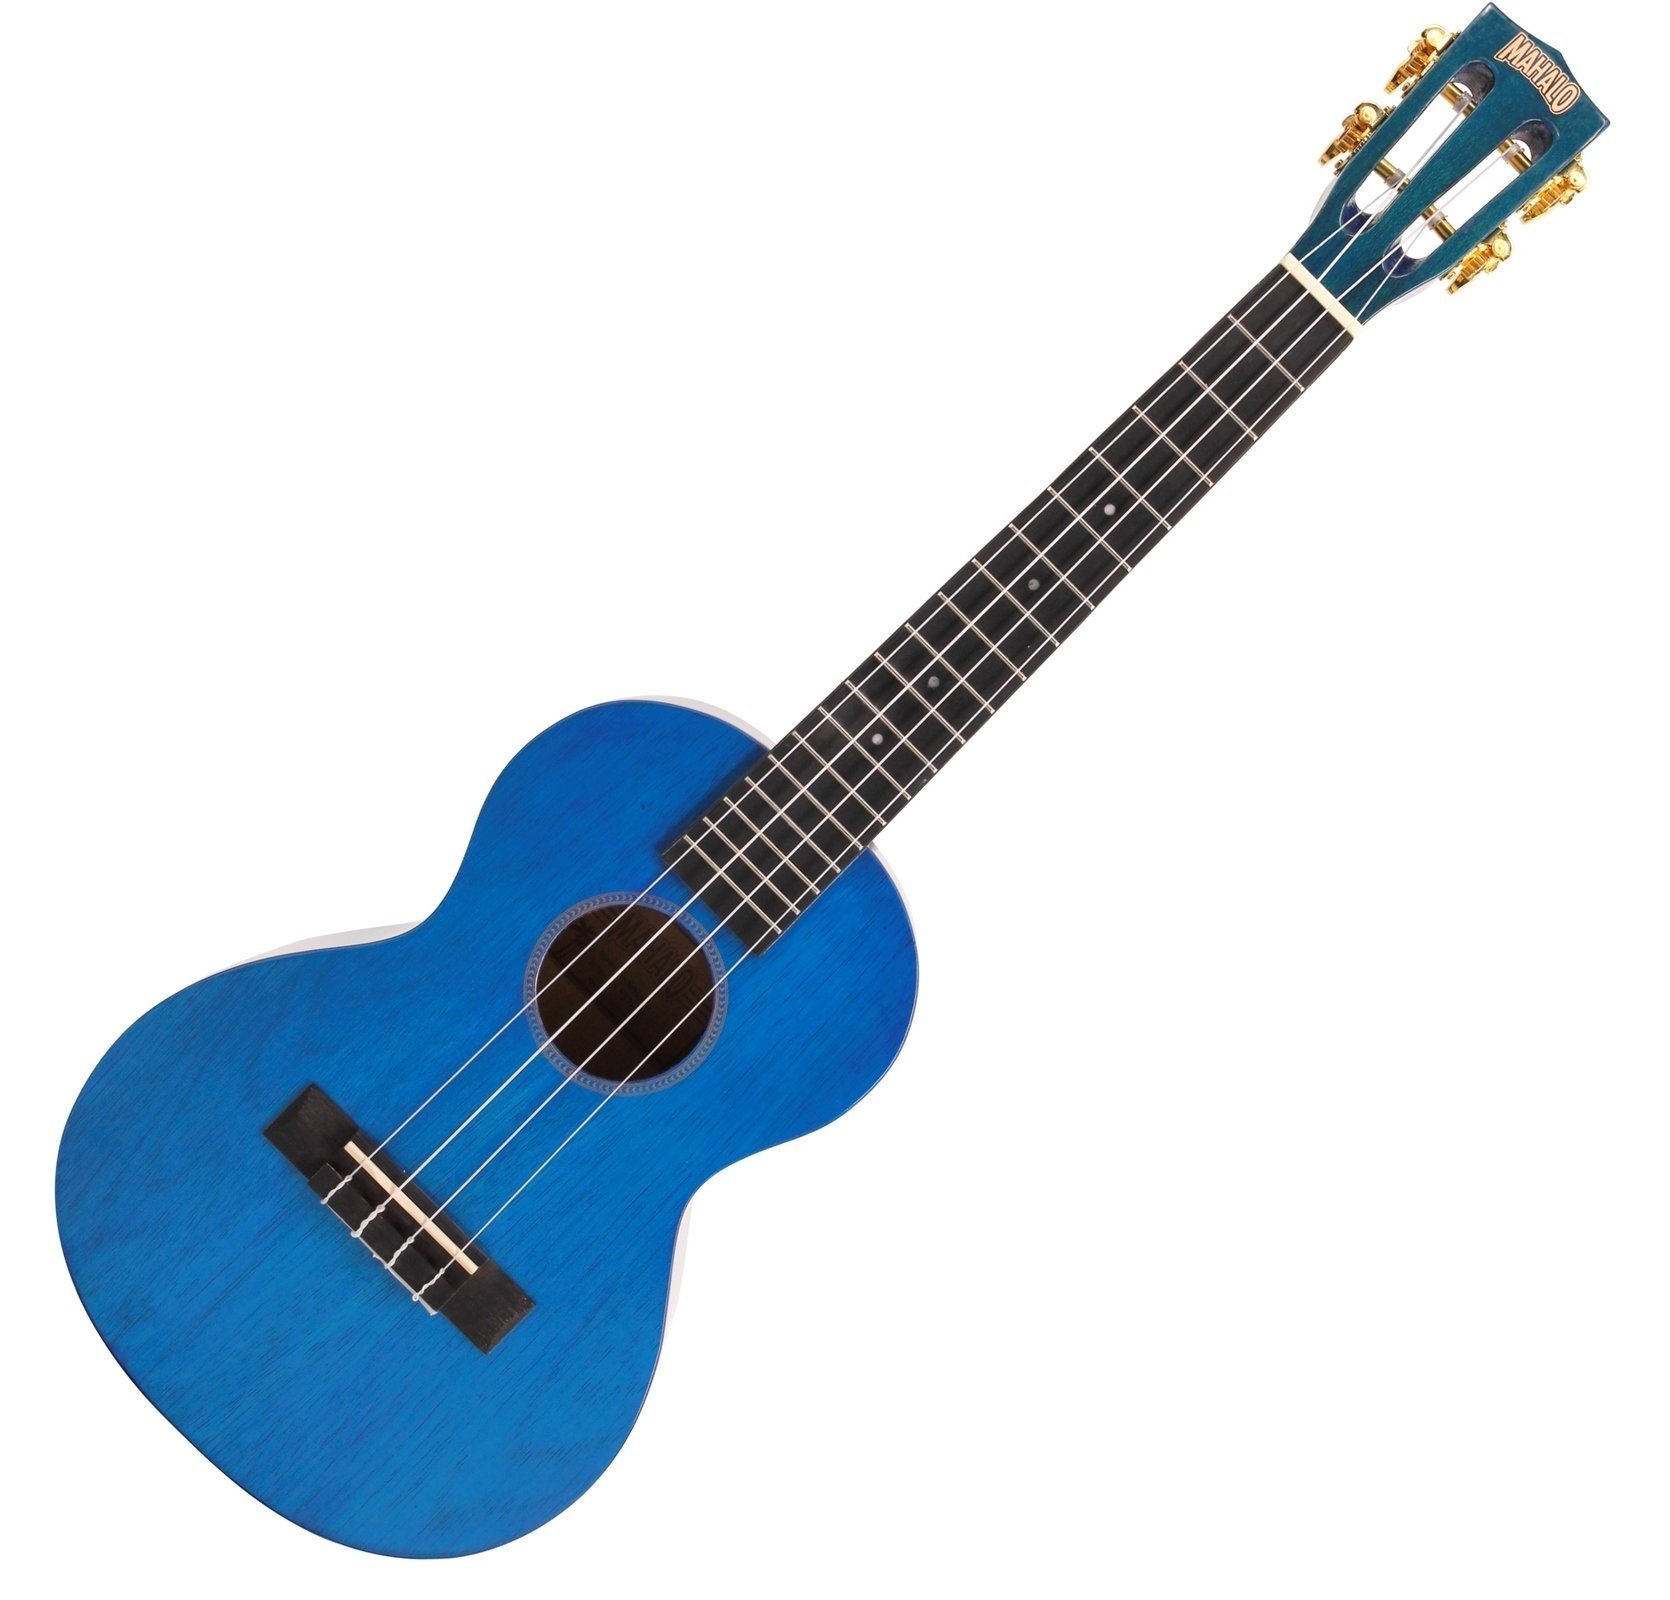 Tenor ukulele Mahalo Tenor Ukulele Transparent Blue